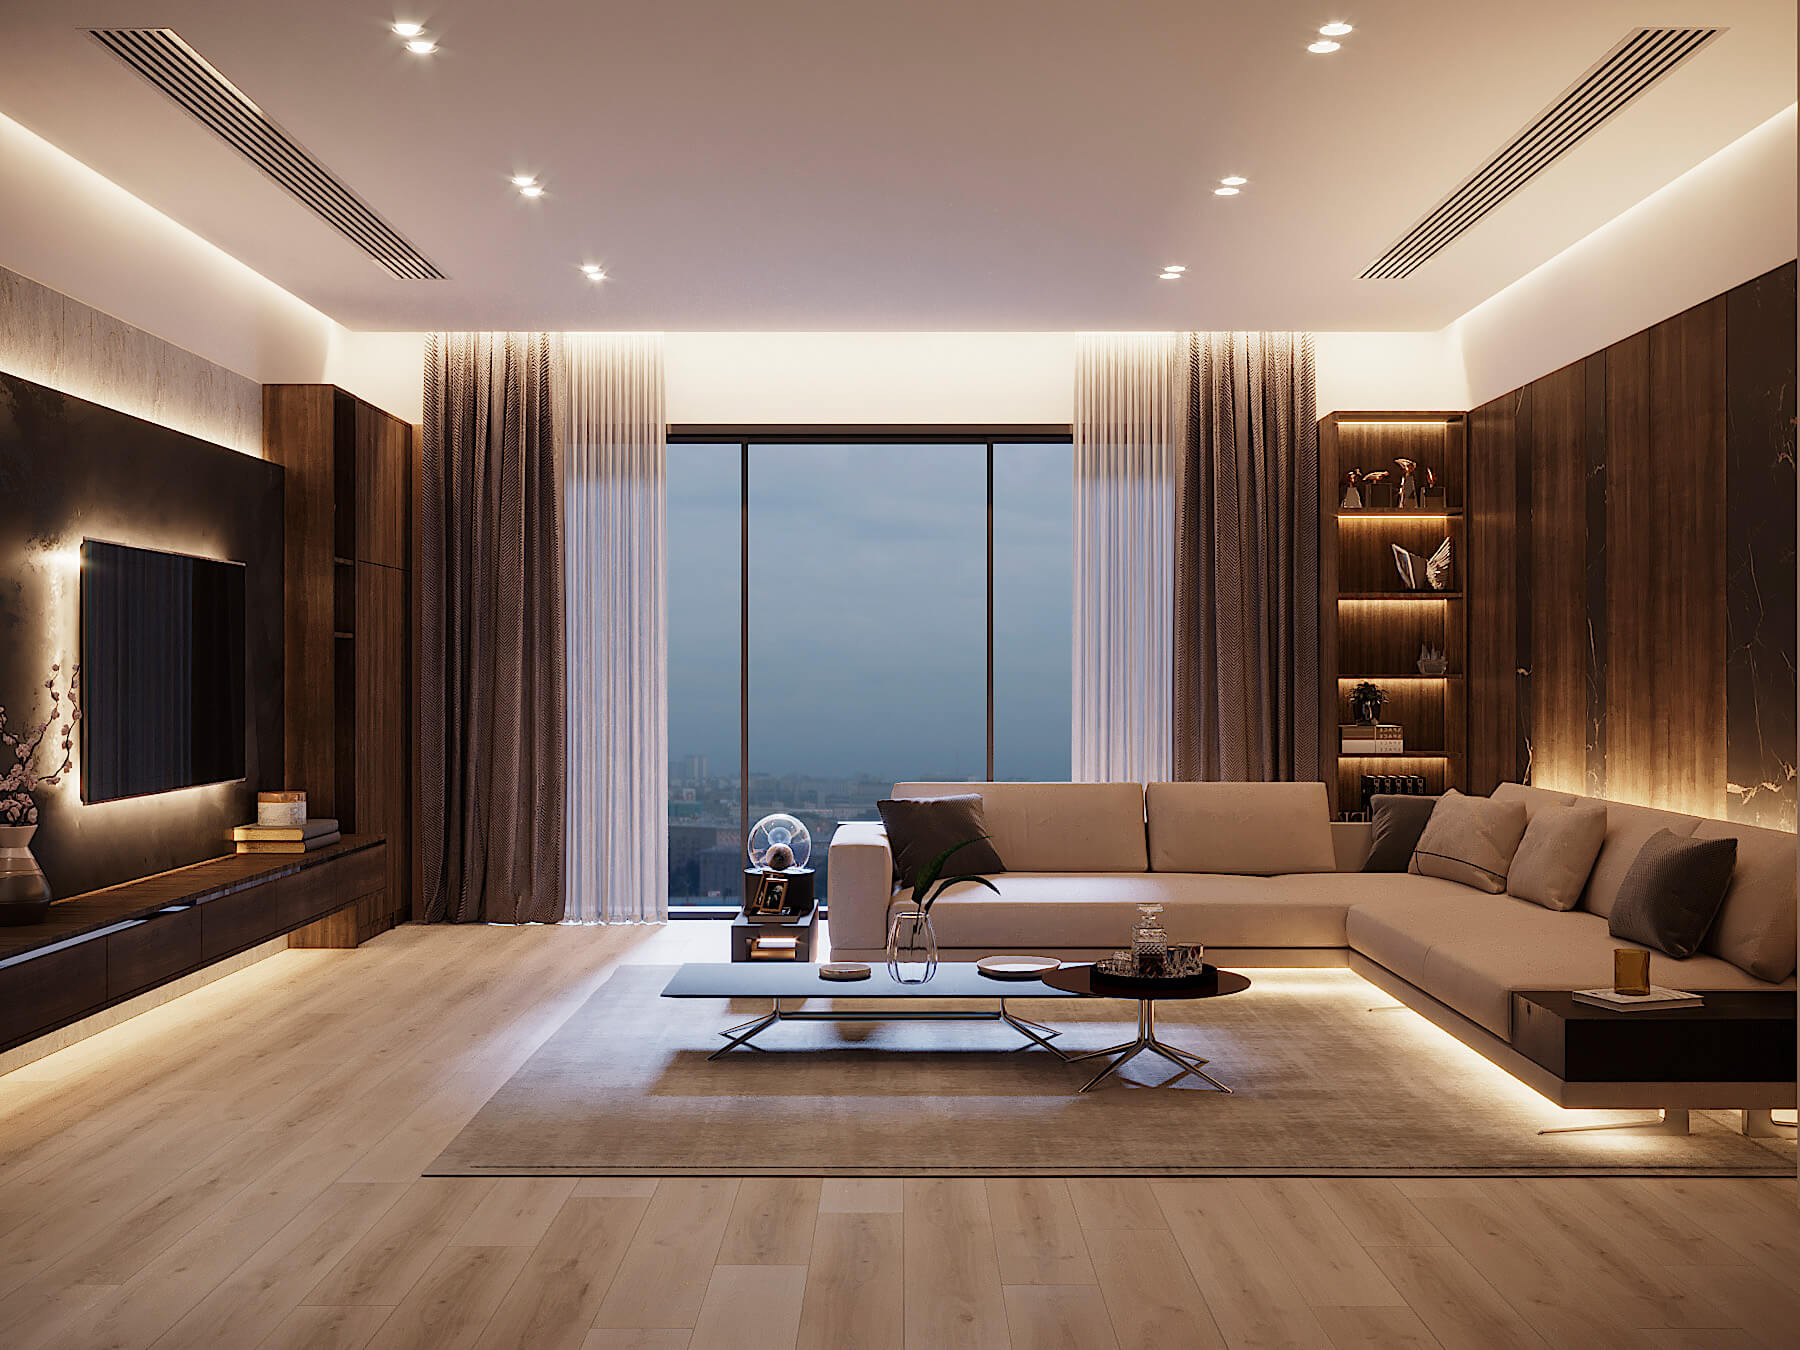 Lichtpaket Wohnzimmer | Fernseher - Sideboard - Regale - Couch for Led Wohnzimmer